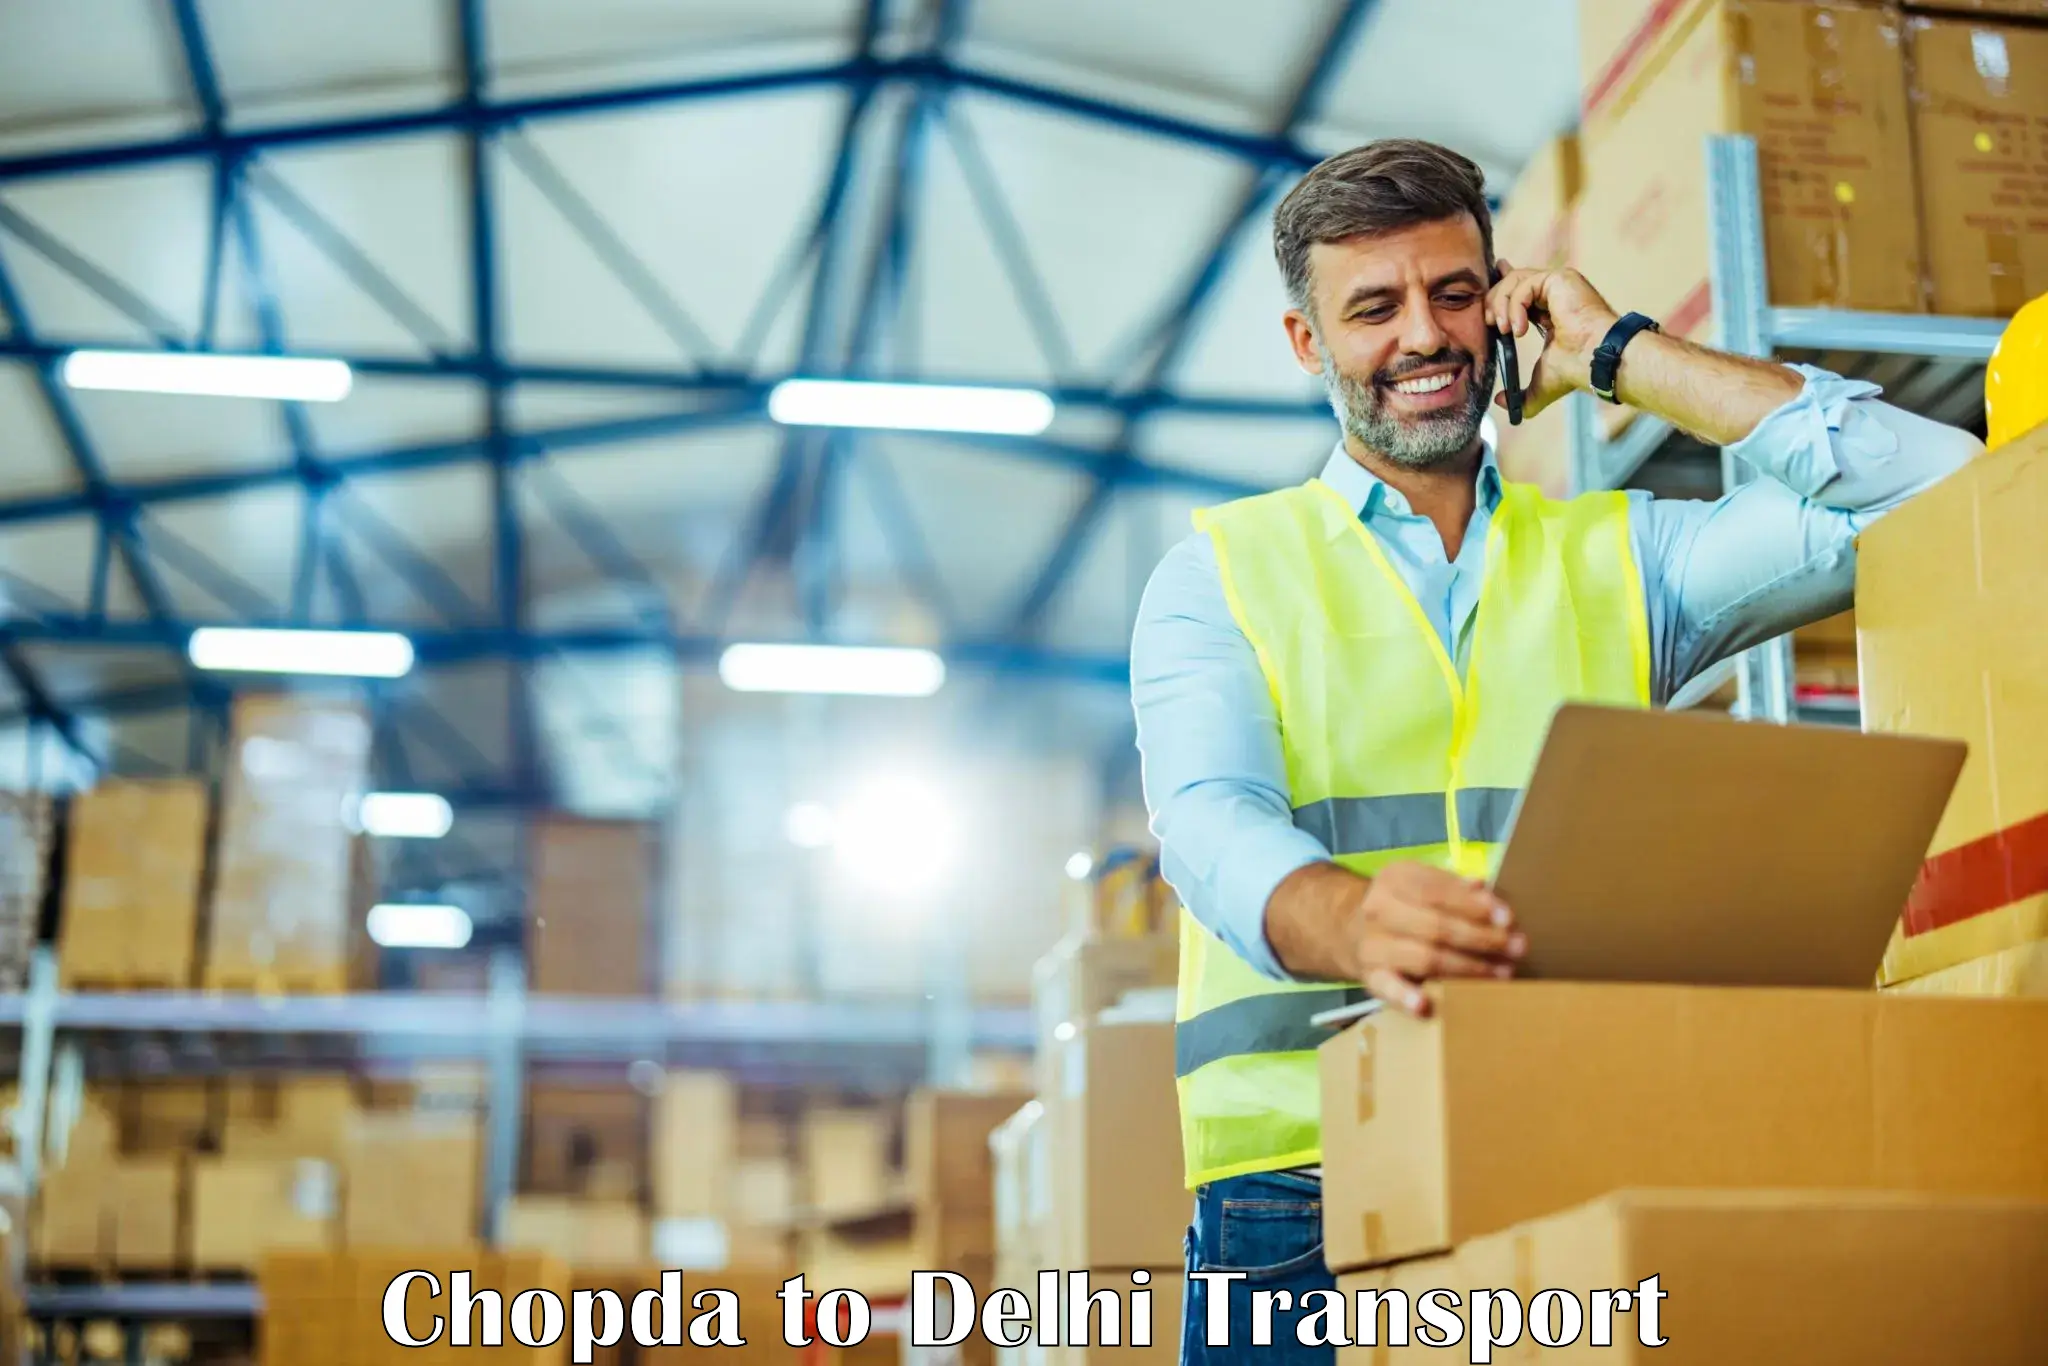 Logistics transportation services Chopda to Delhi